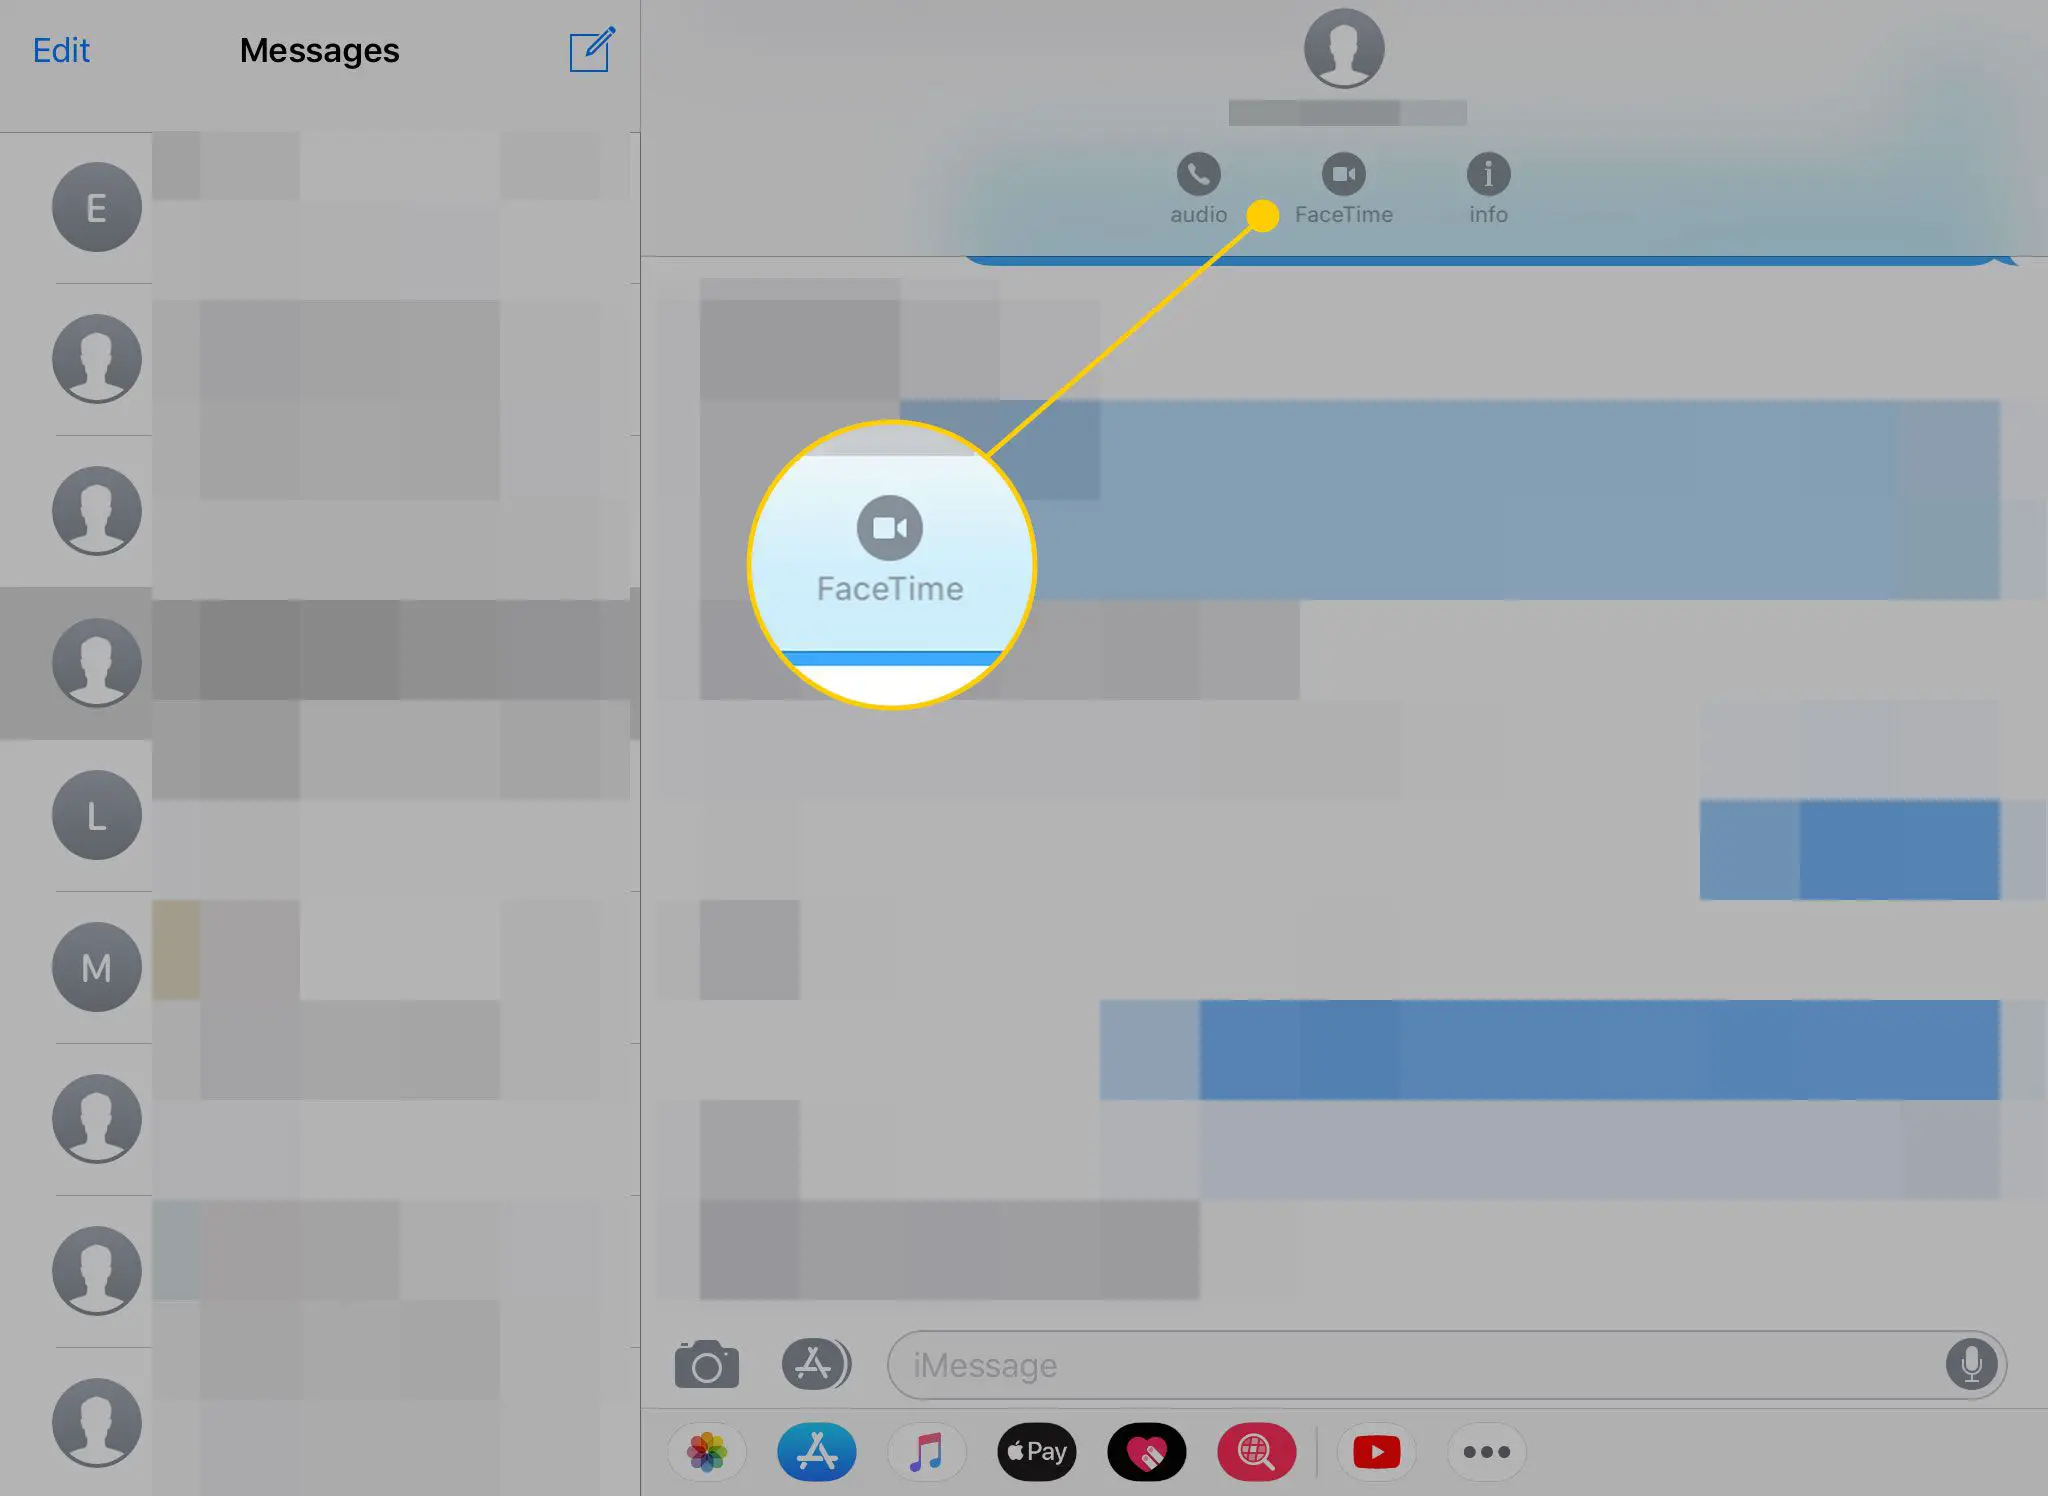 Mensagens no iPad com o ícone FaceTime destacado